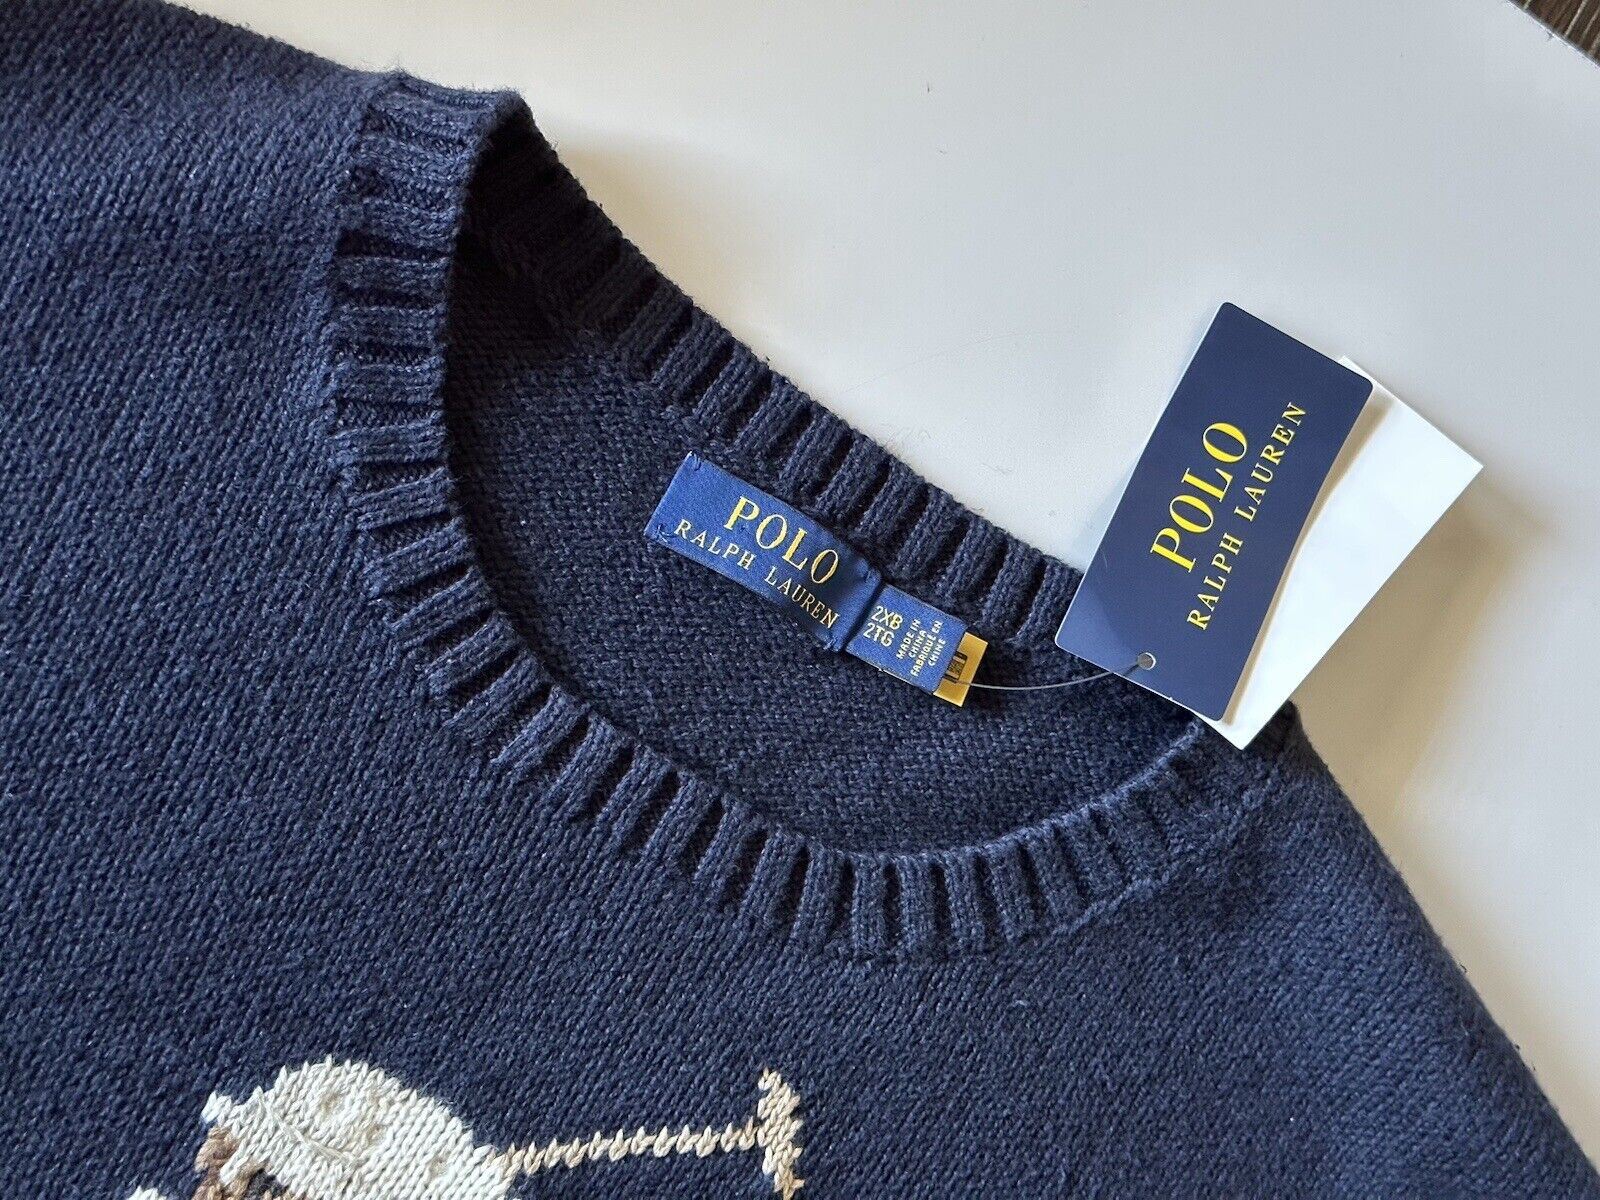 СЗТ 428 долларов США Polo Ralph Lauren Big Pony Bear Синий свитер из хлопка/льна 3XB 